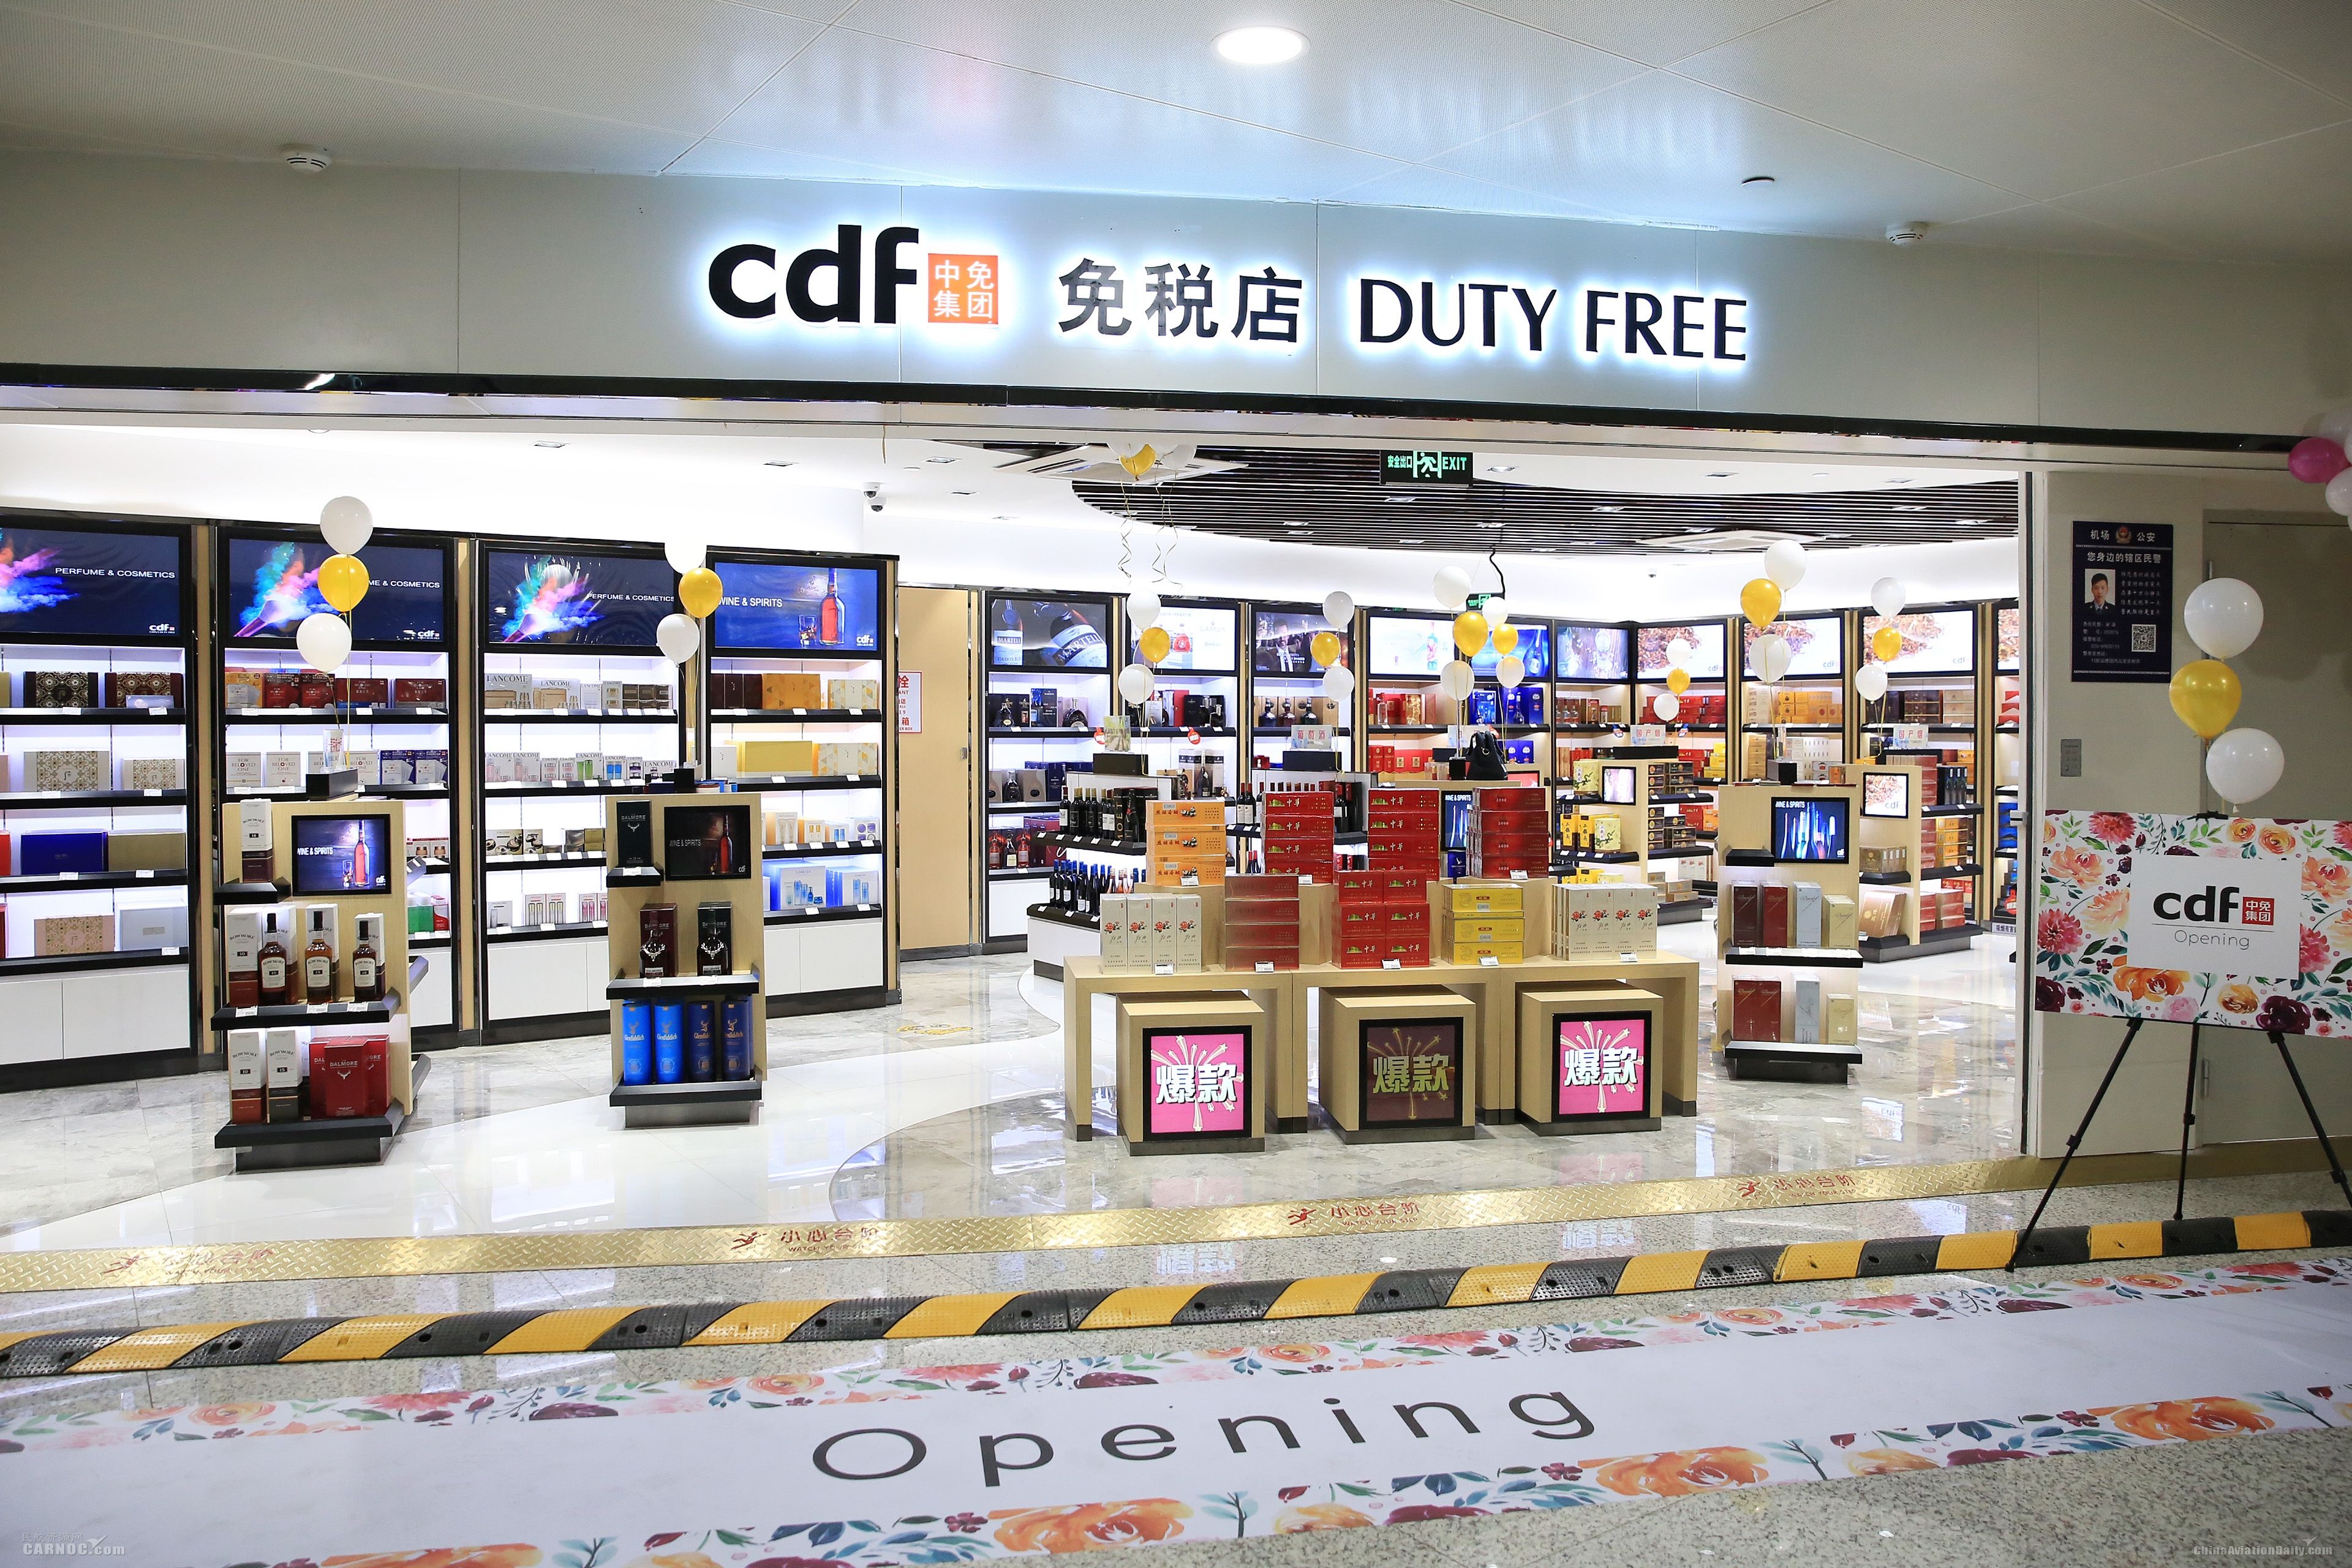 之后中国零售市场上出现了一种新型零售模式"免税店,免税店一经